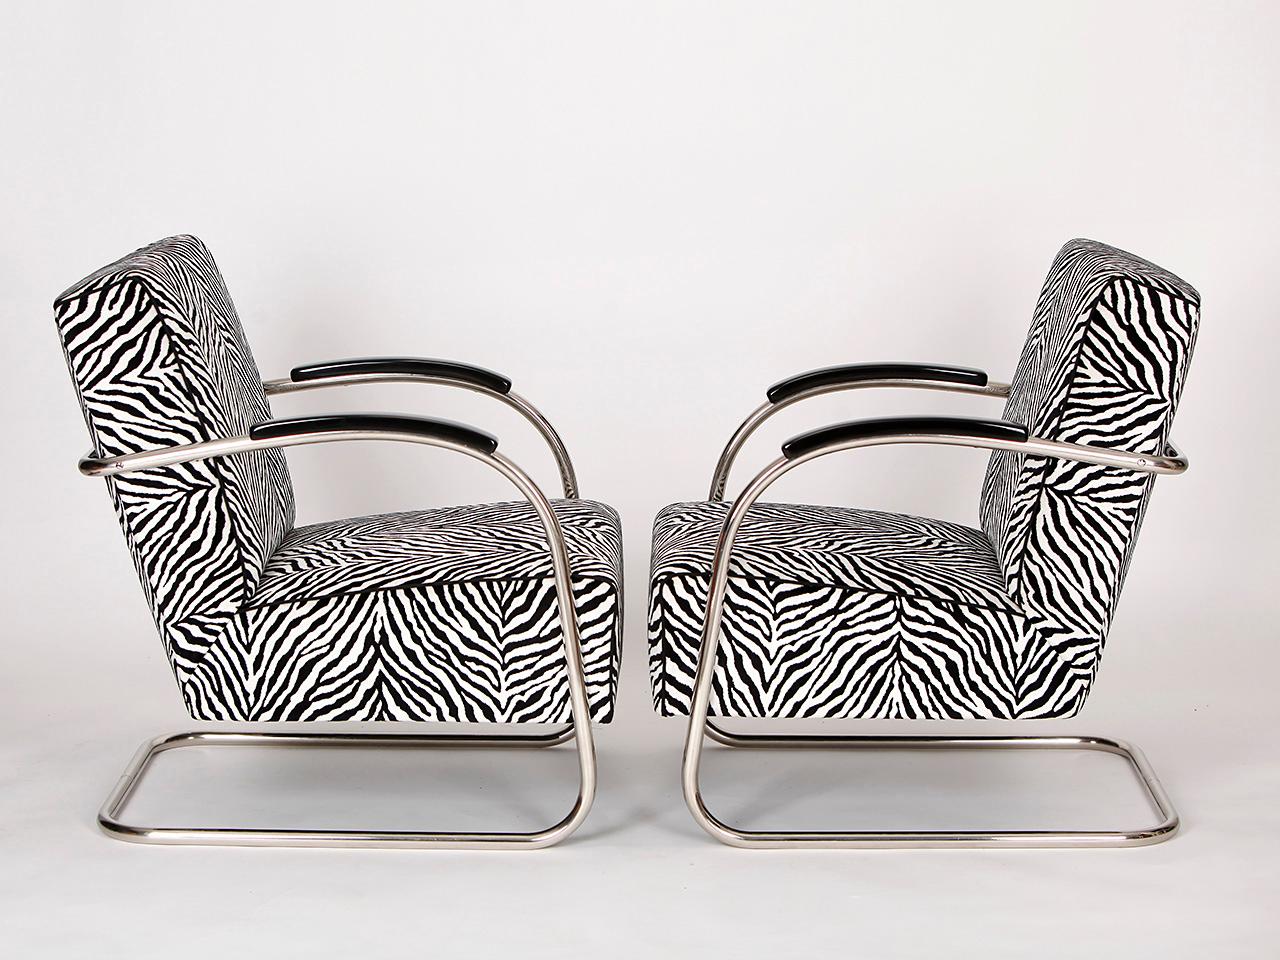 Sessel aus Stahlrohr von Mücke-melder, 1930er Jahre, Zweier-Set (Moderne der Mitte des Jahrhunderts)